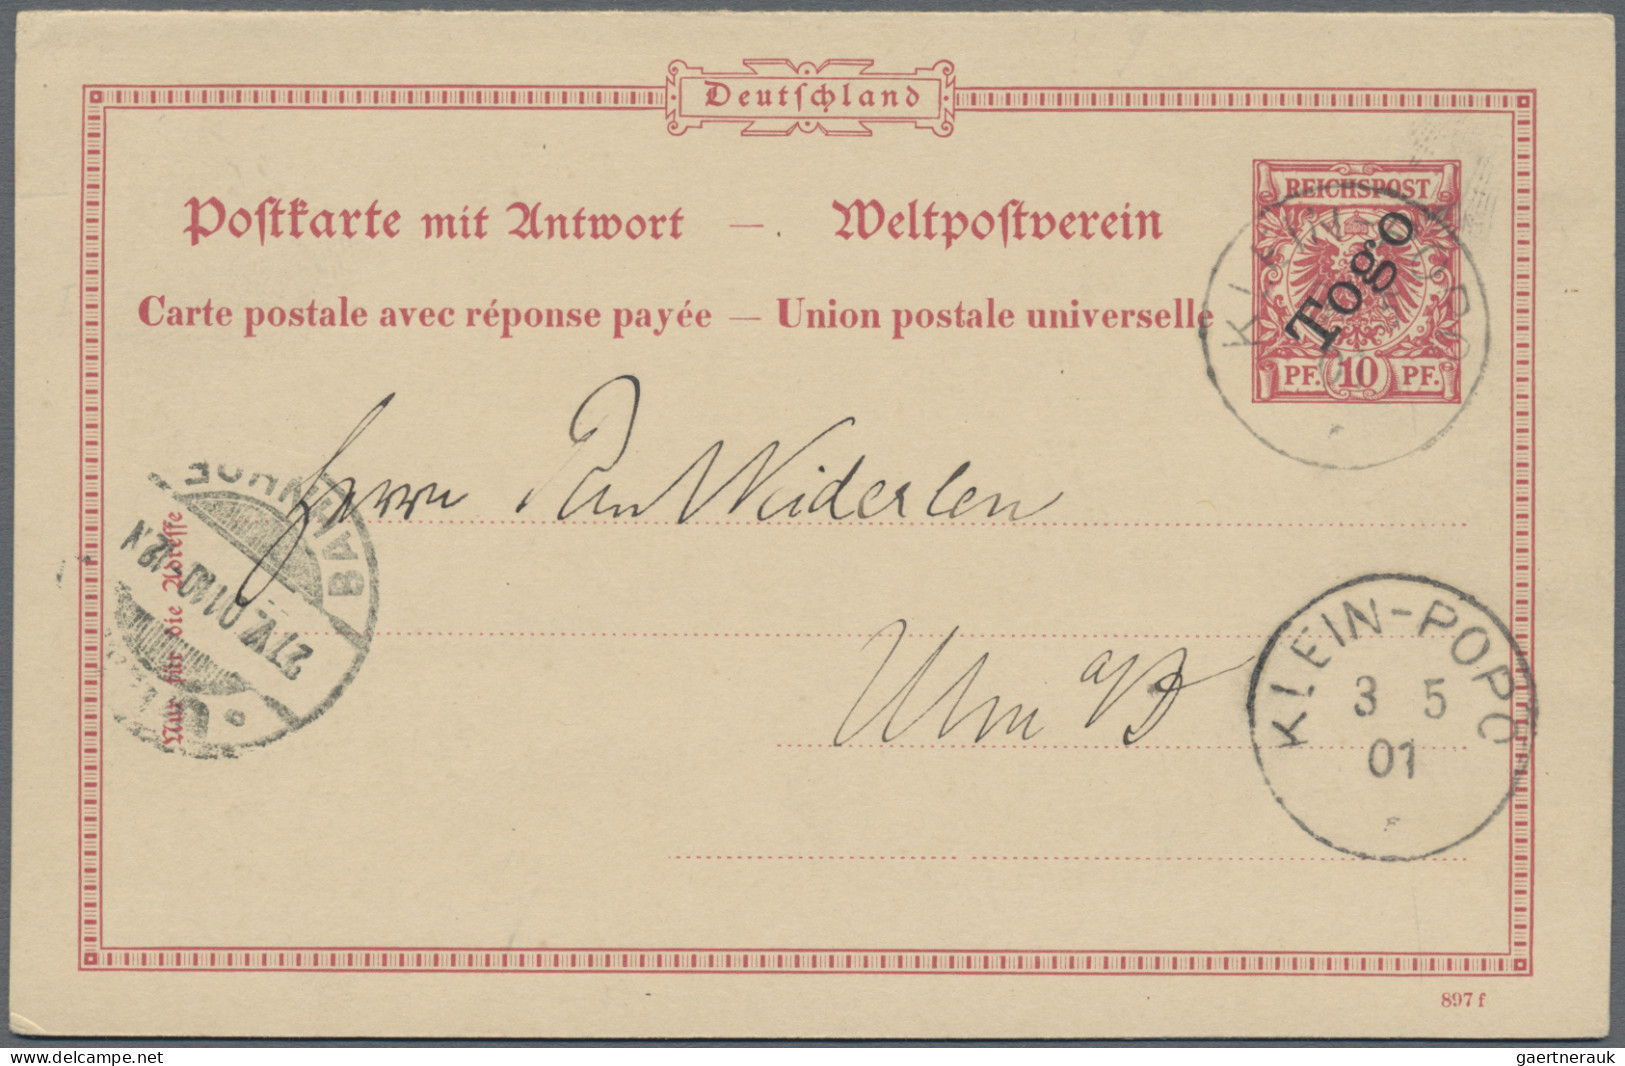 Deutsche Kolonien: 1898/1907, Kolonien in Afrika, Partie von sieben nach Deutsch